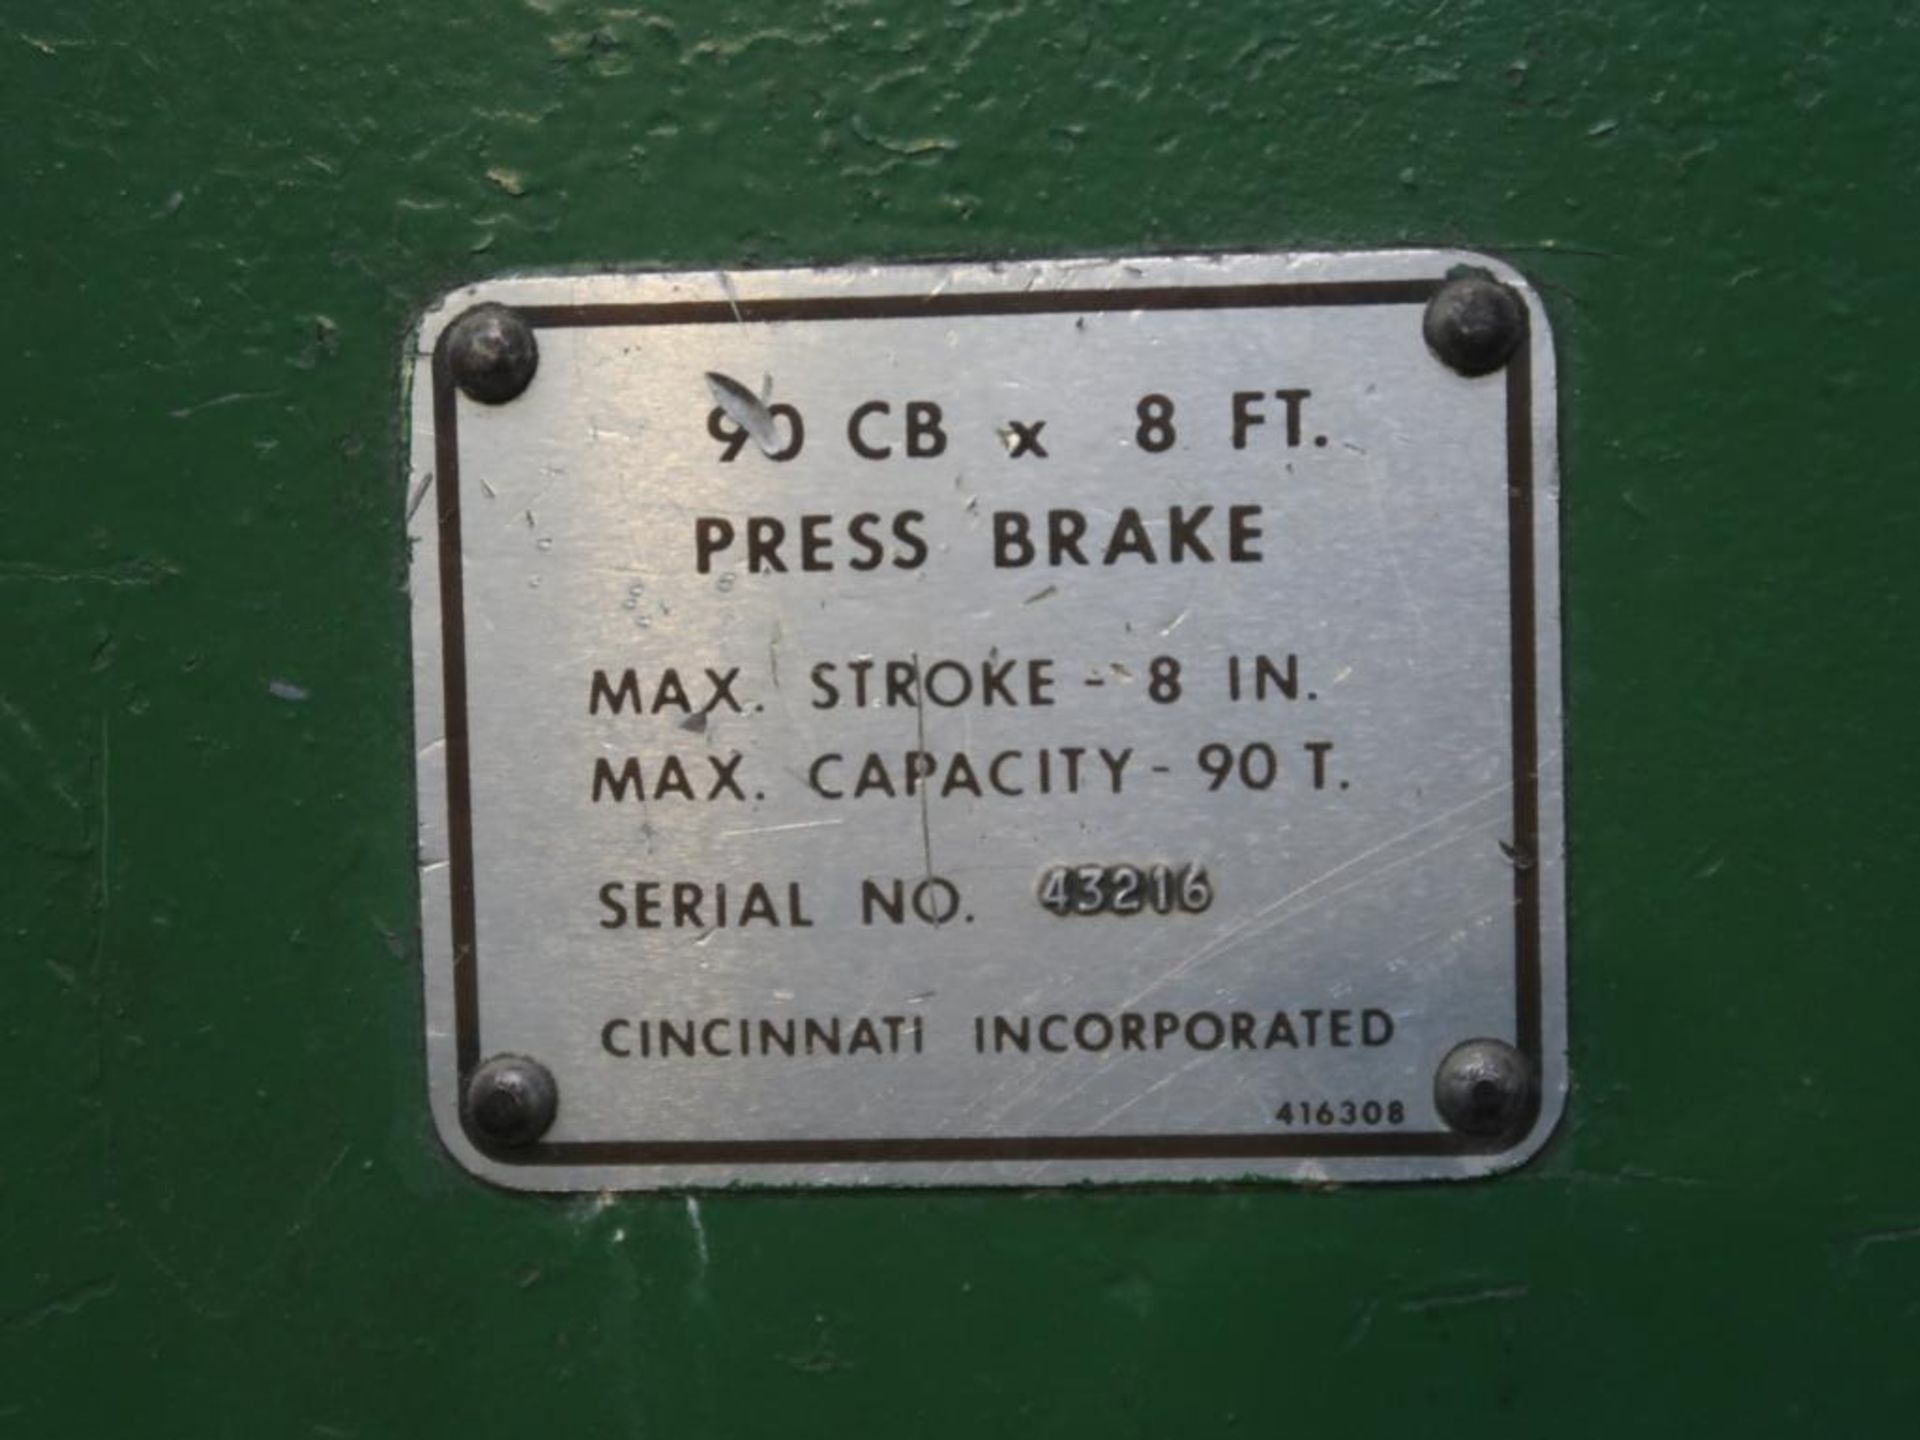 Cincinnati 90 Ton x 10 ft. Press Brake Model 90CB, S/N 43216, 8 in. Max. Stroke, Auto-Programmed - Image 4 of 4